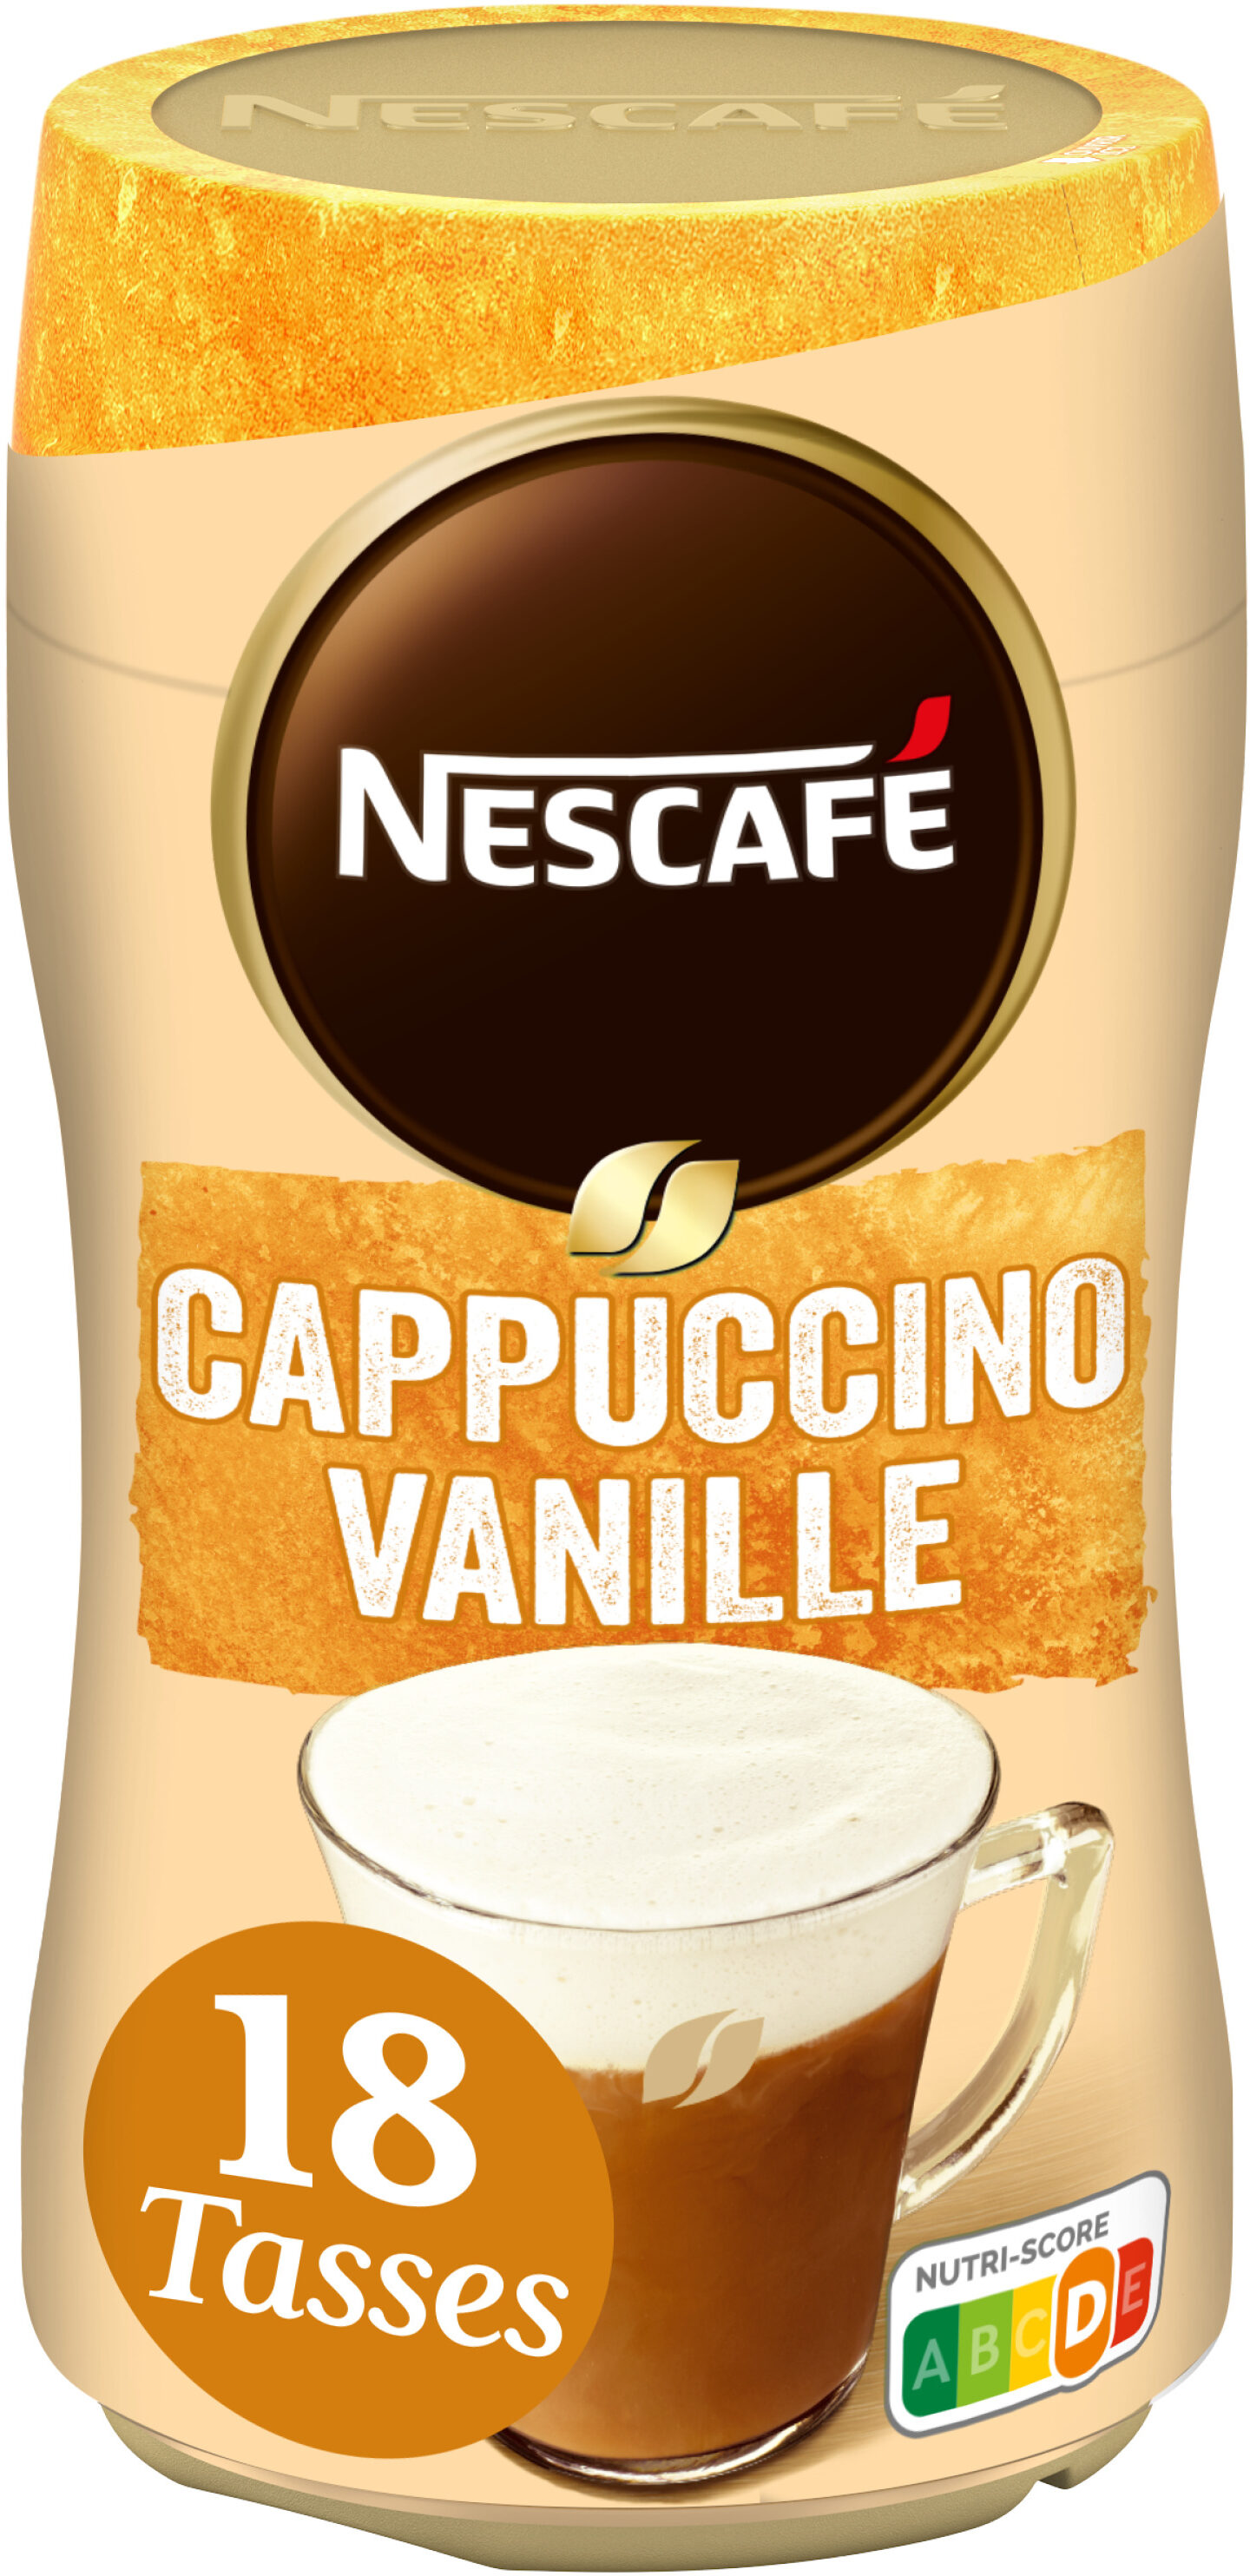 NESCAFÉ Cappuccino Vanille, Café soluble, Boîte de 310g - Produit - fr